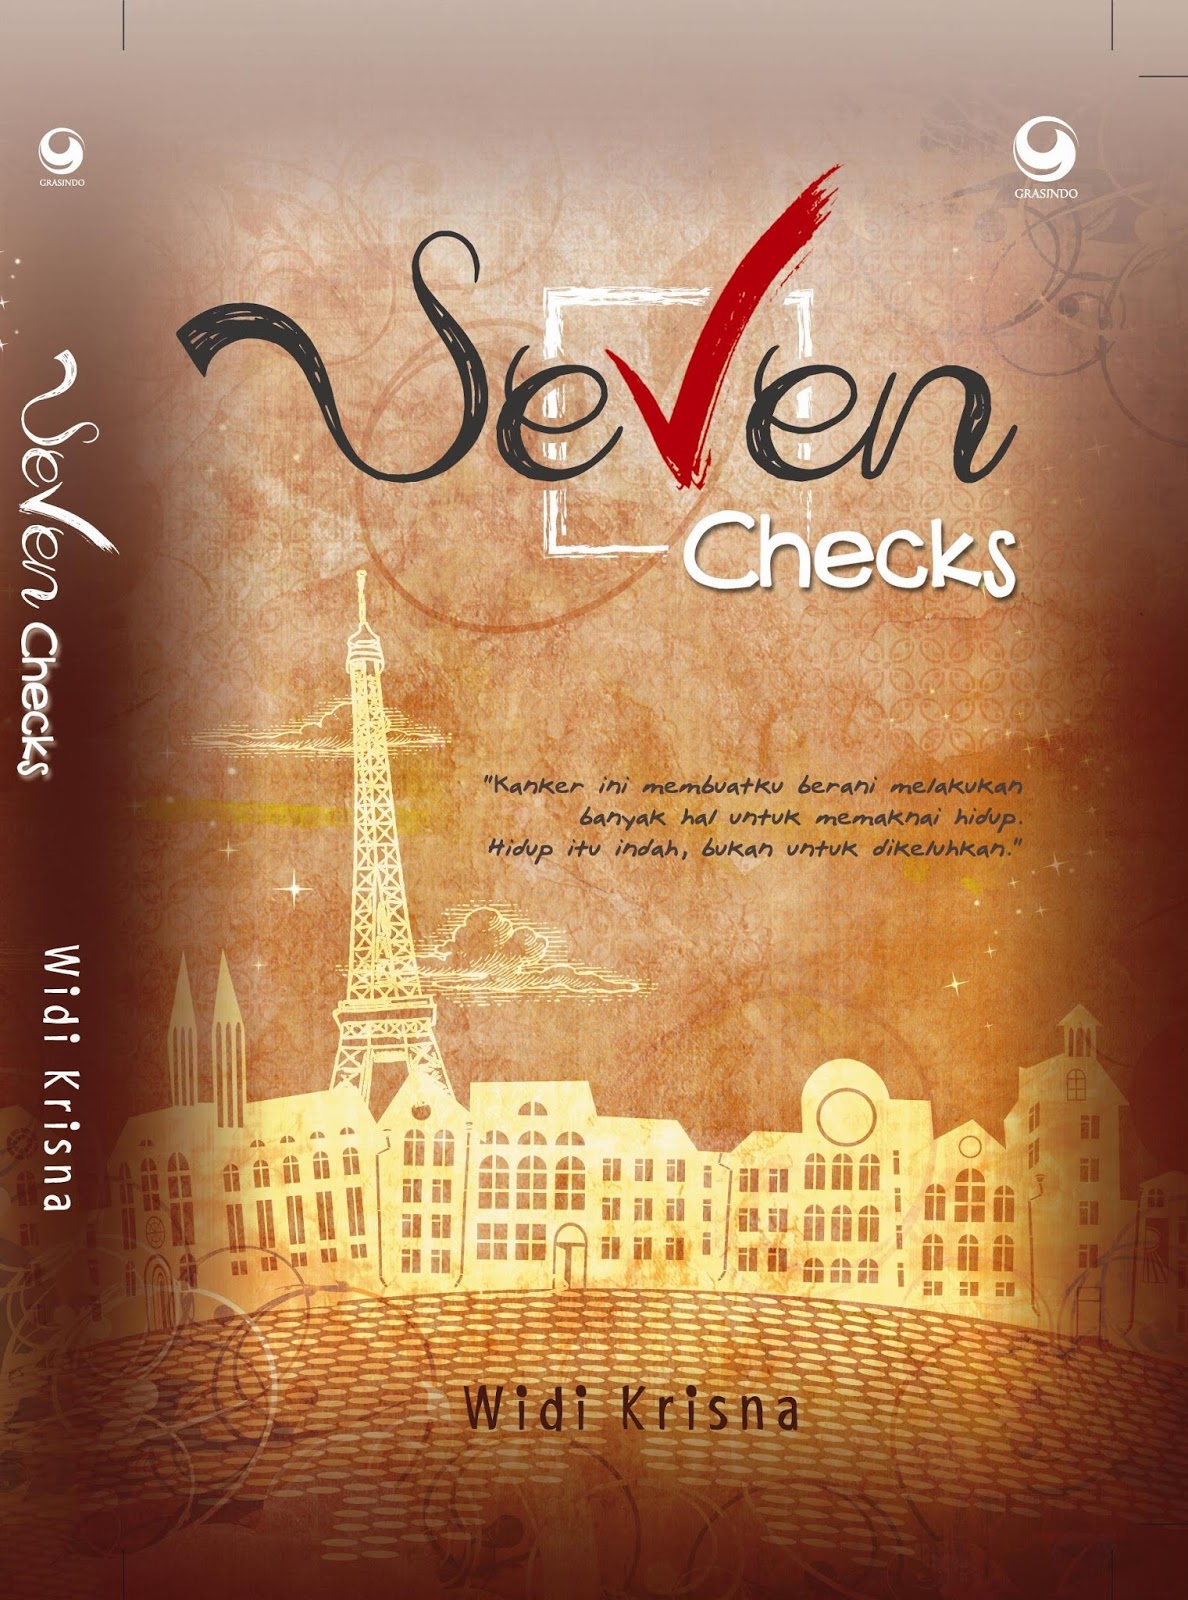 Seven Checks